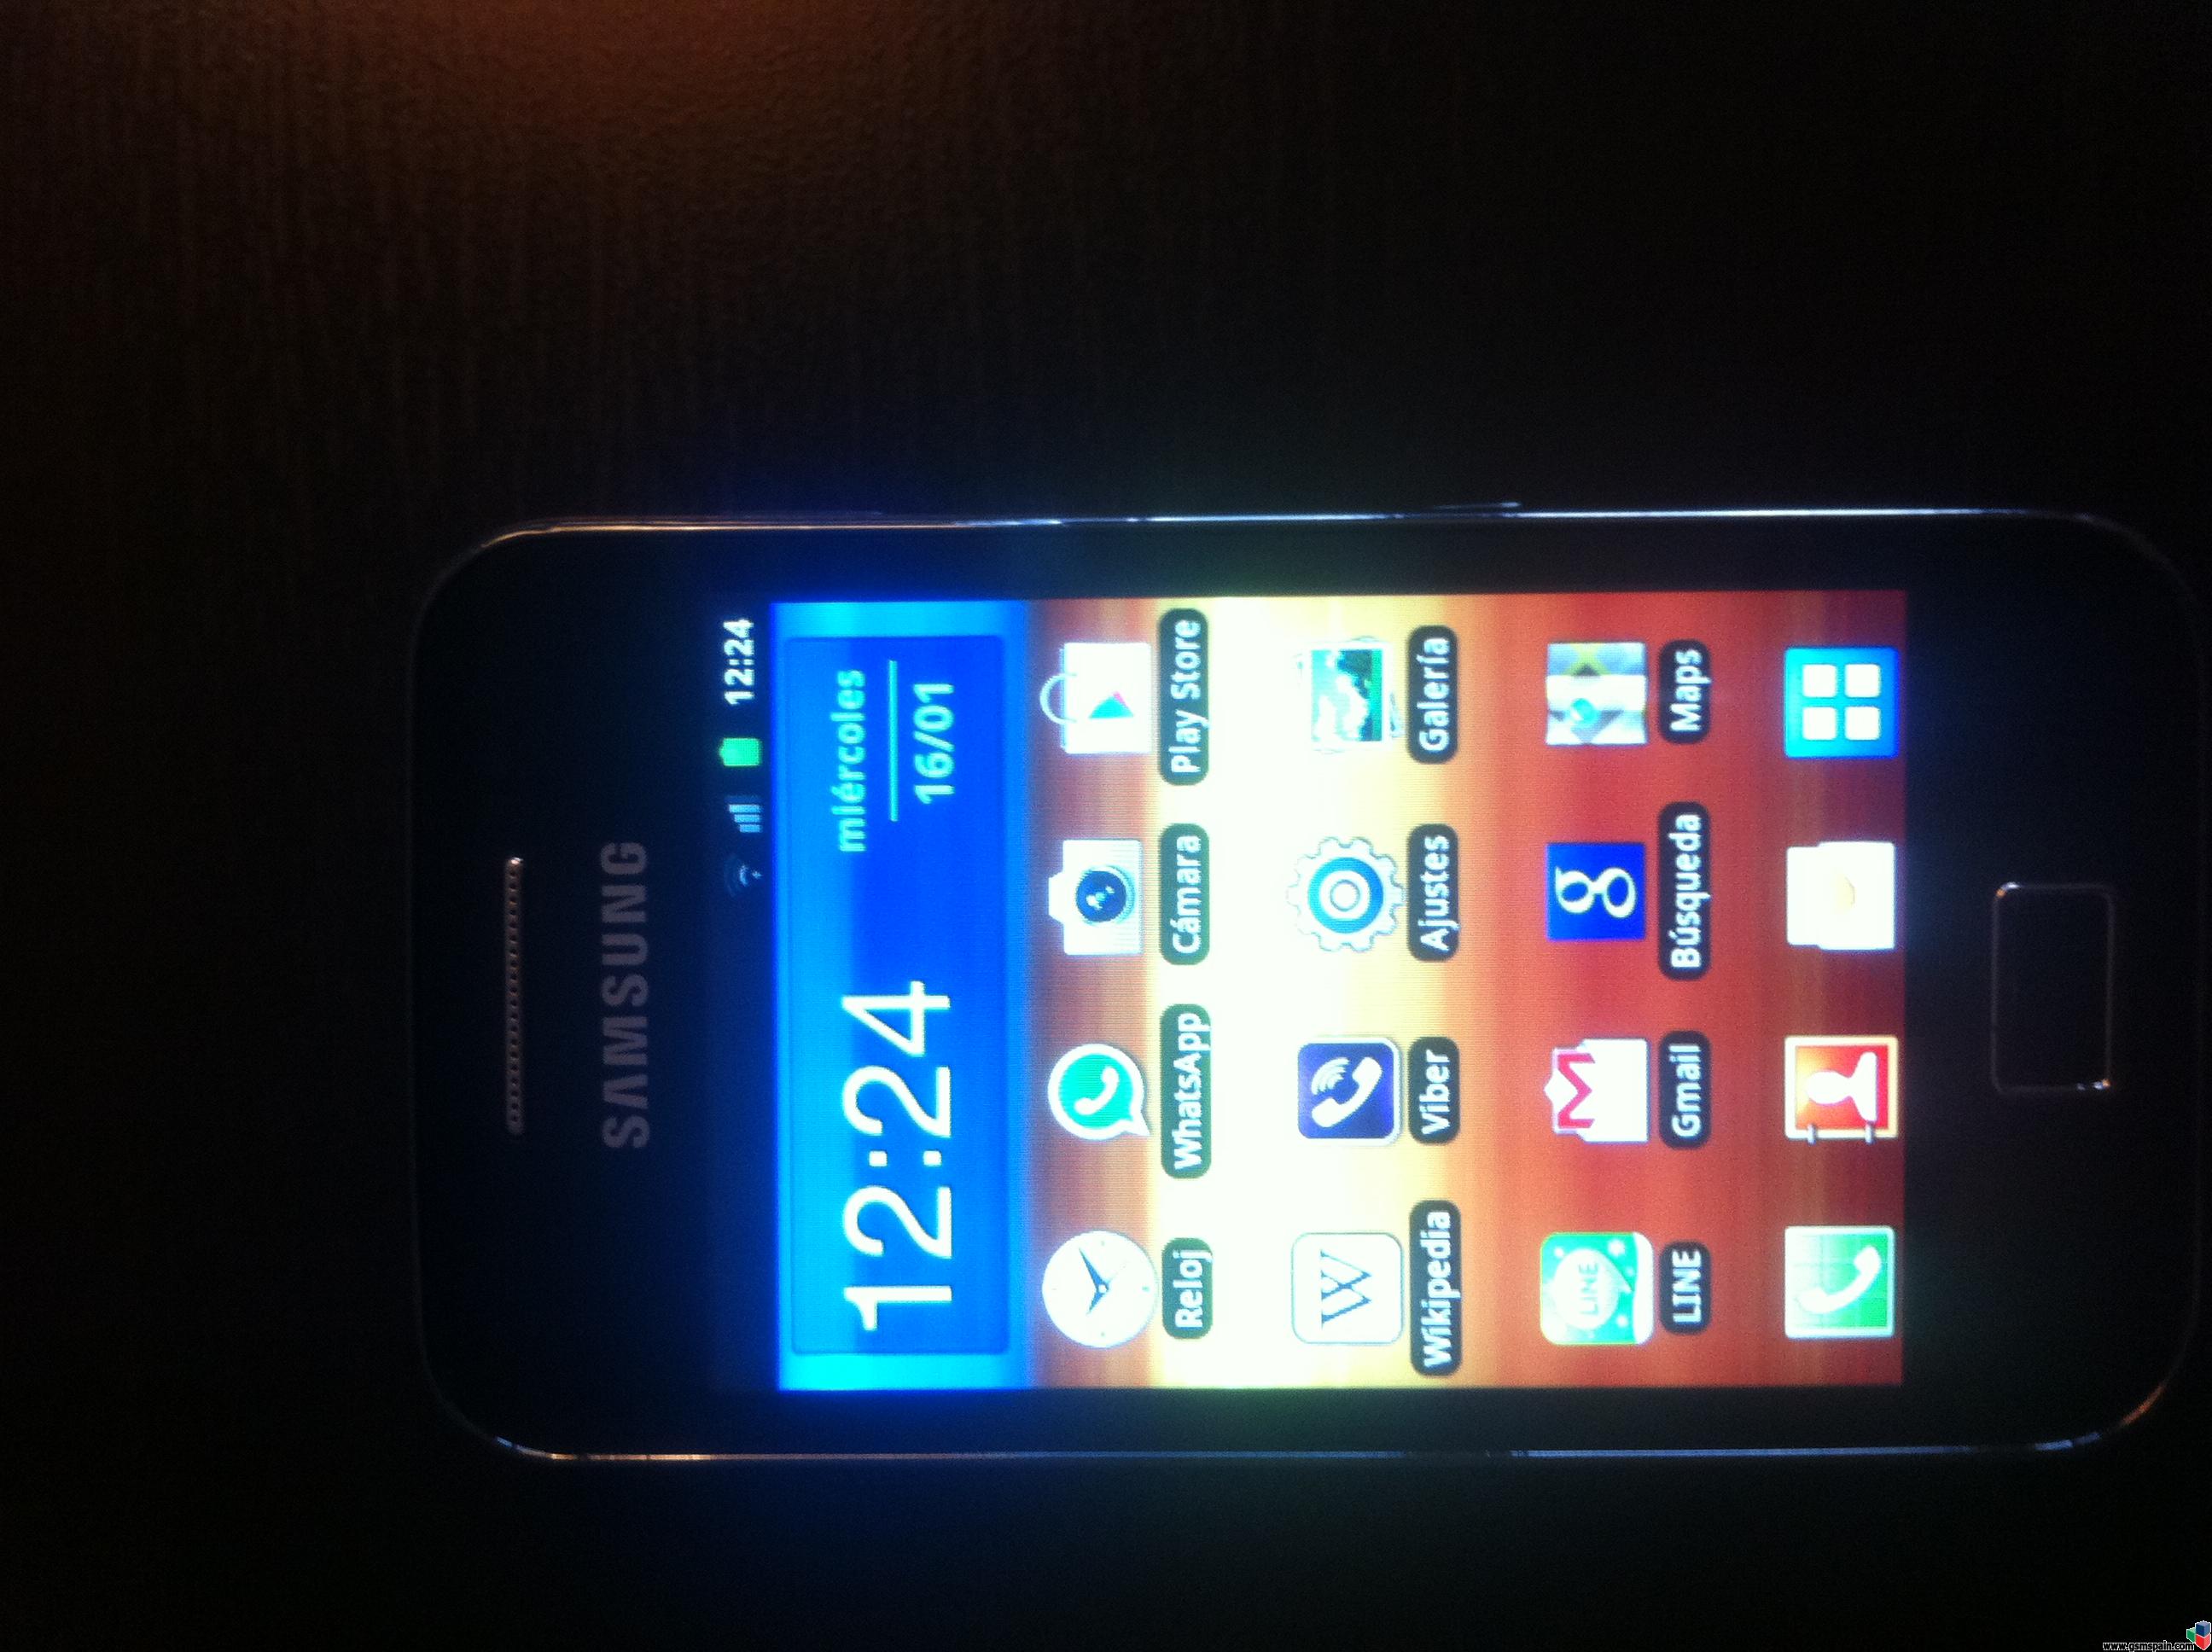 [VENDO] Samsung Galaxy Ace liberado y rooteado